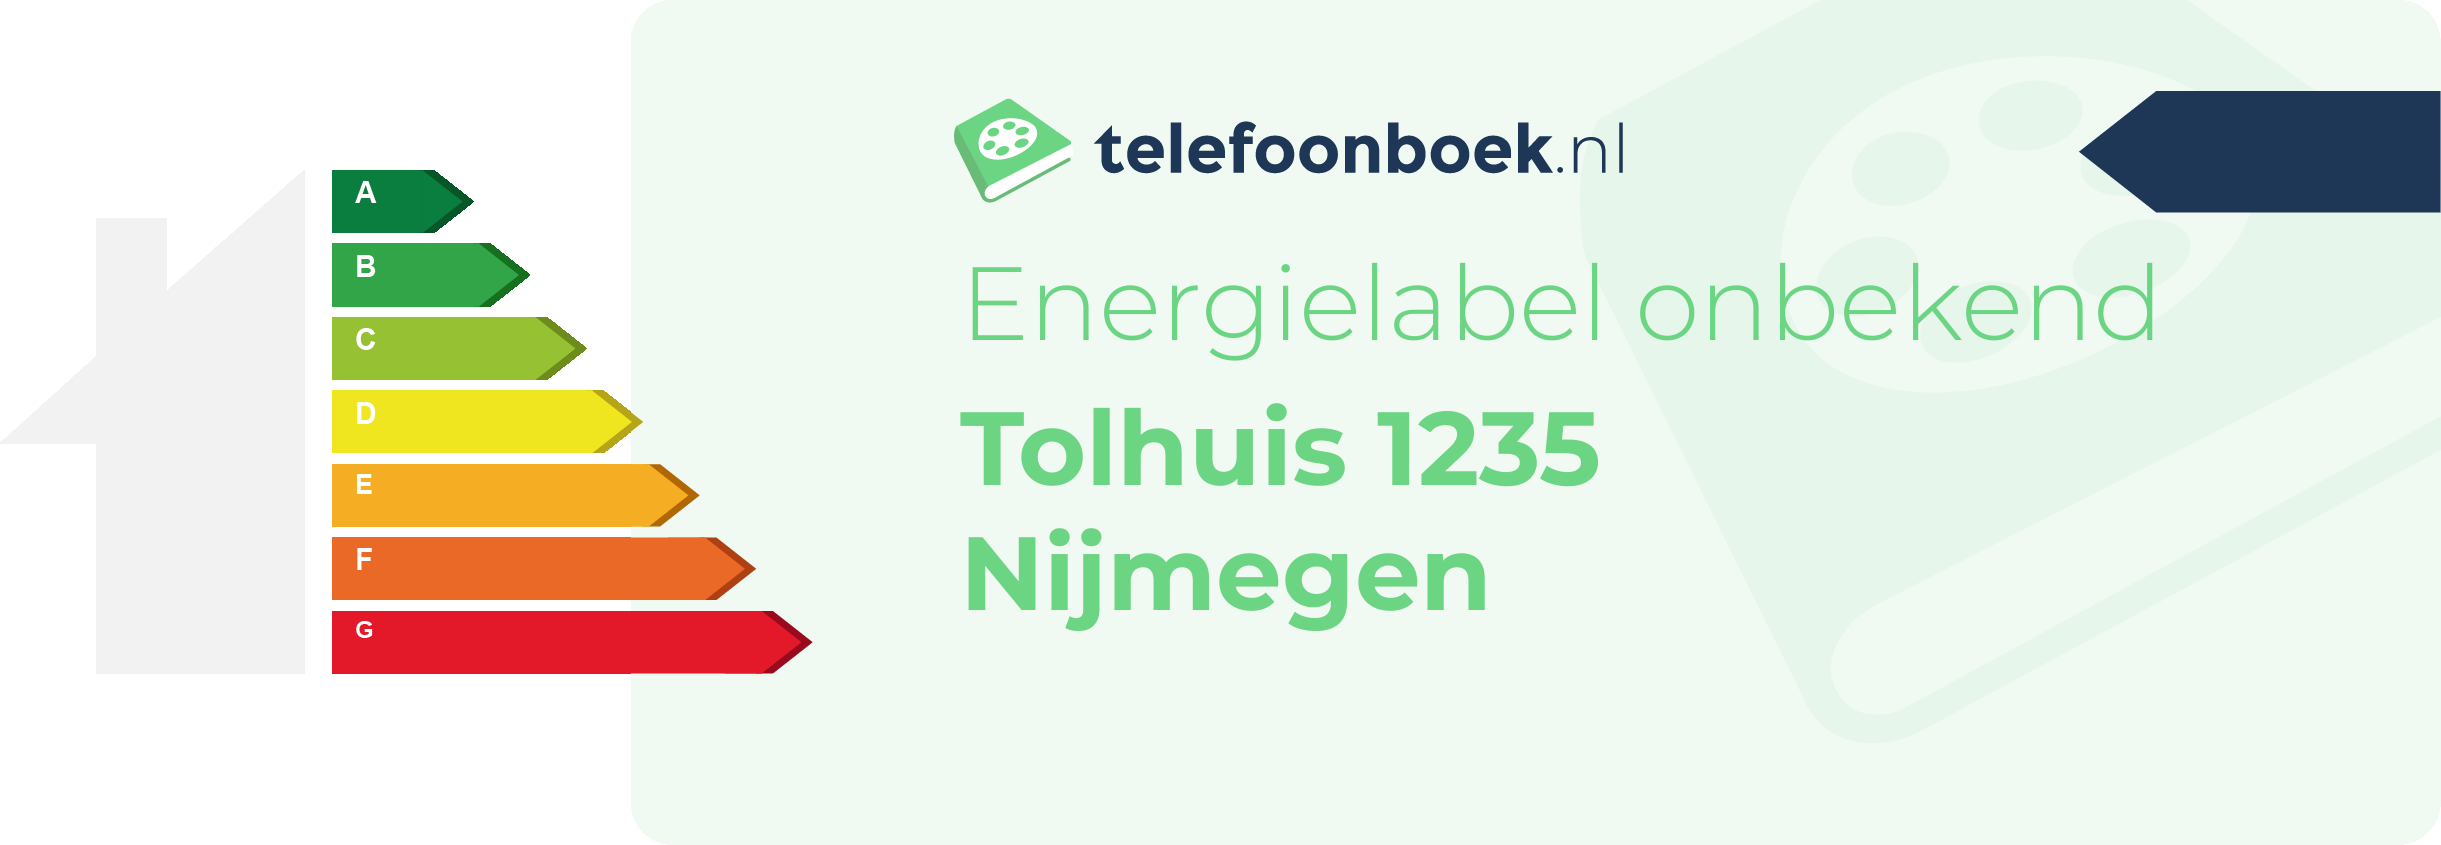 Energielabel Tolhuis 1235 Nijmegen